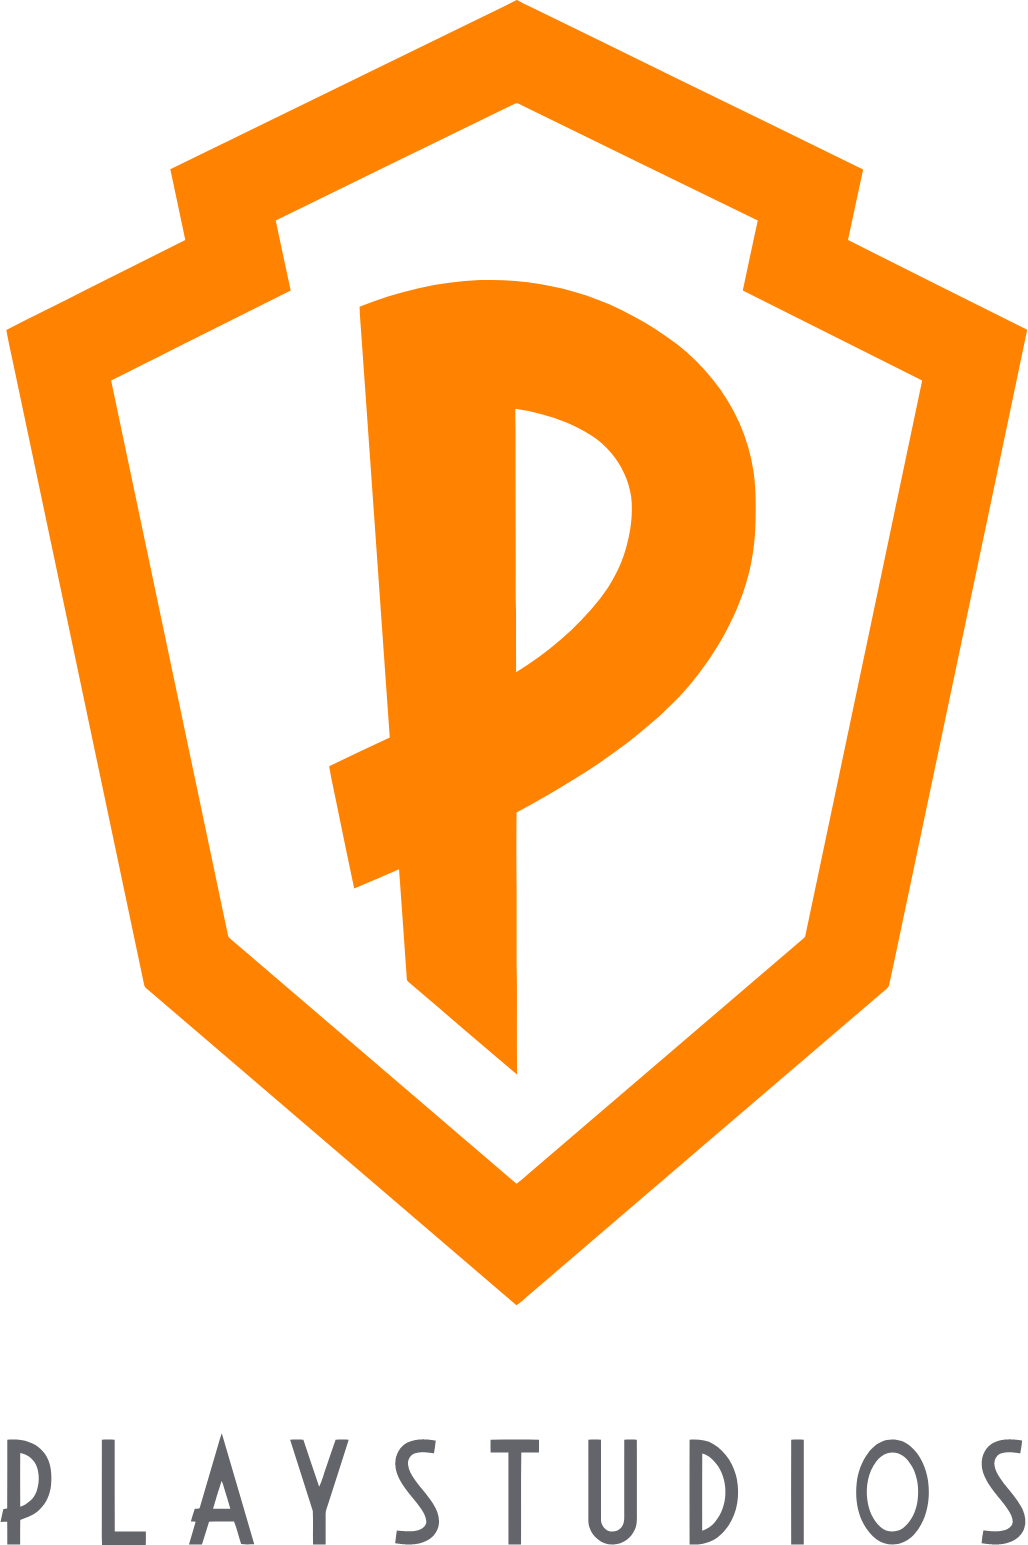 Playstudios logo large (transparent PNG)